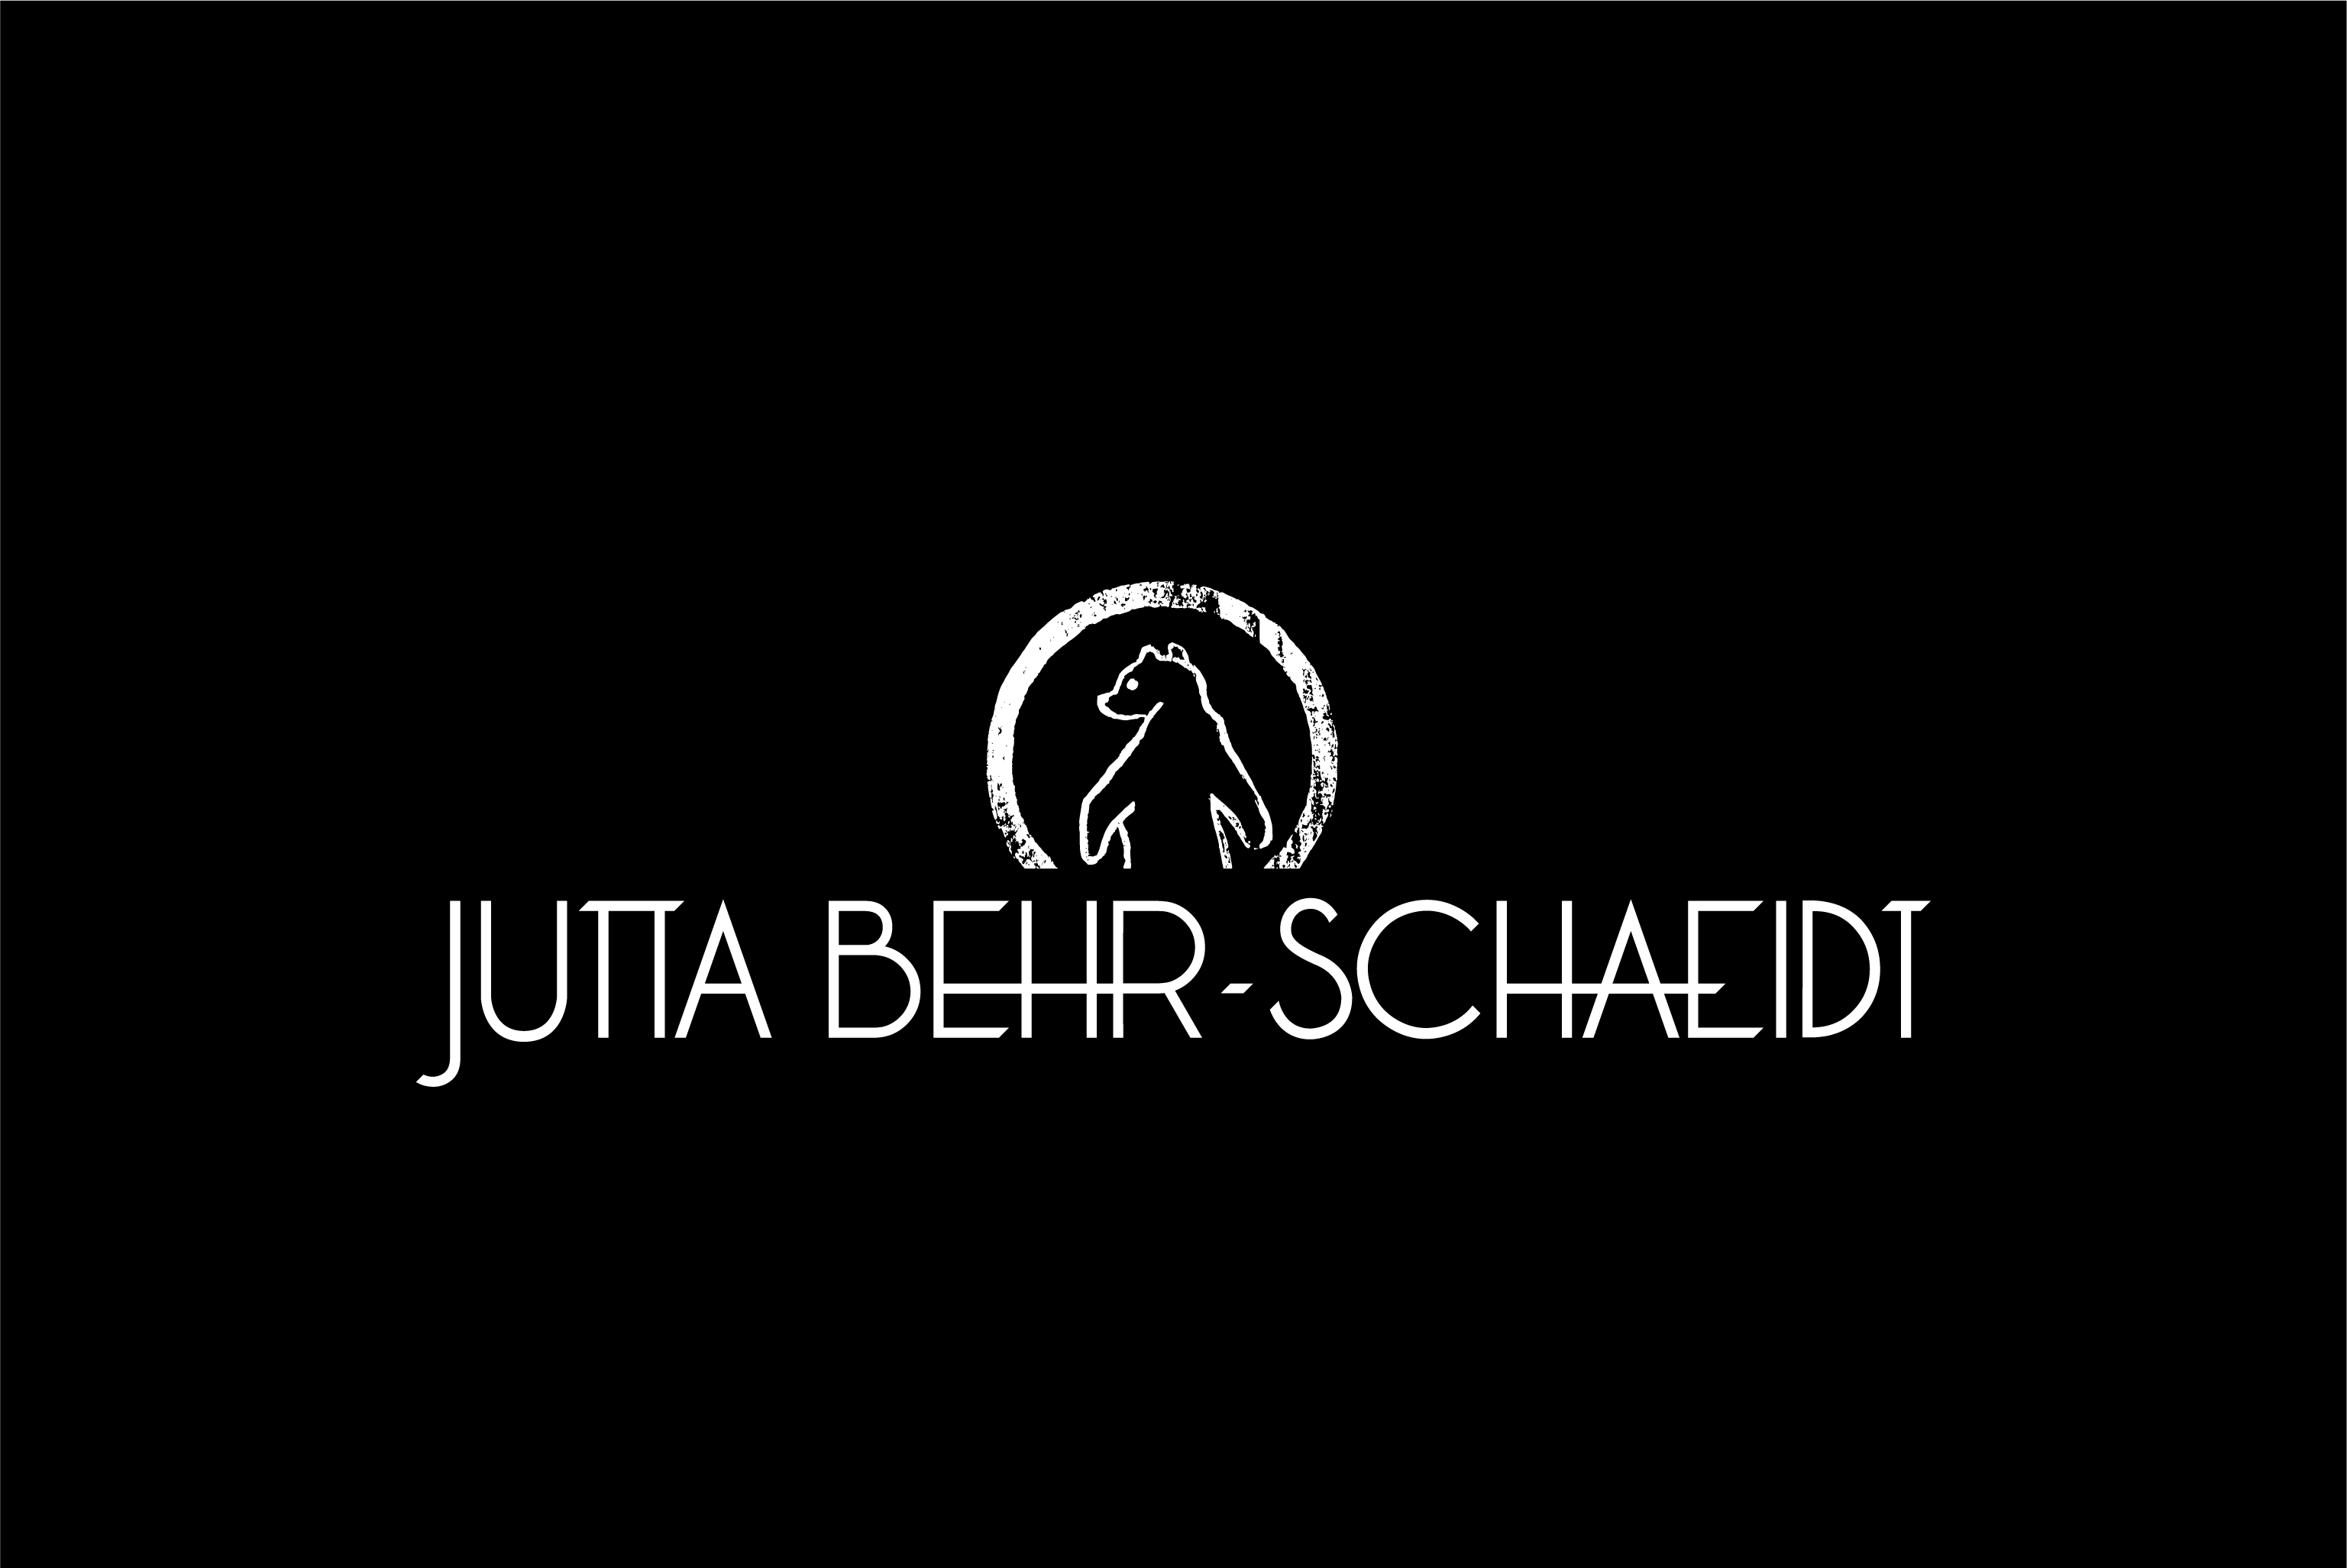 PR Jutta Behr-Schaeidt